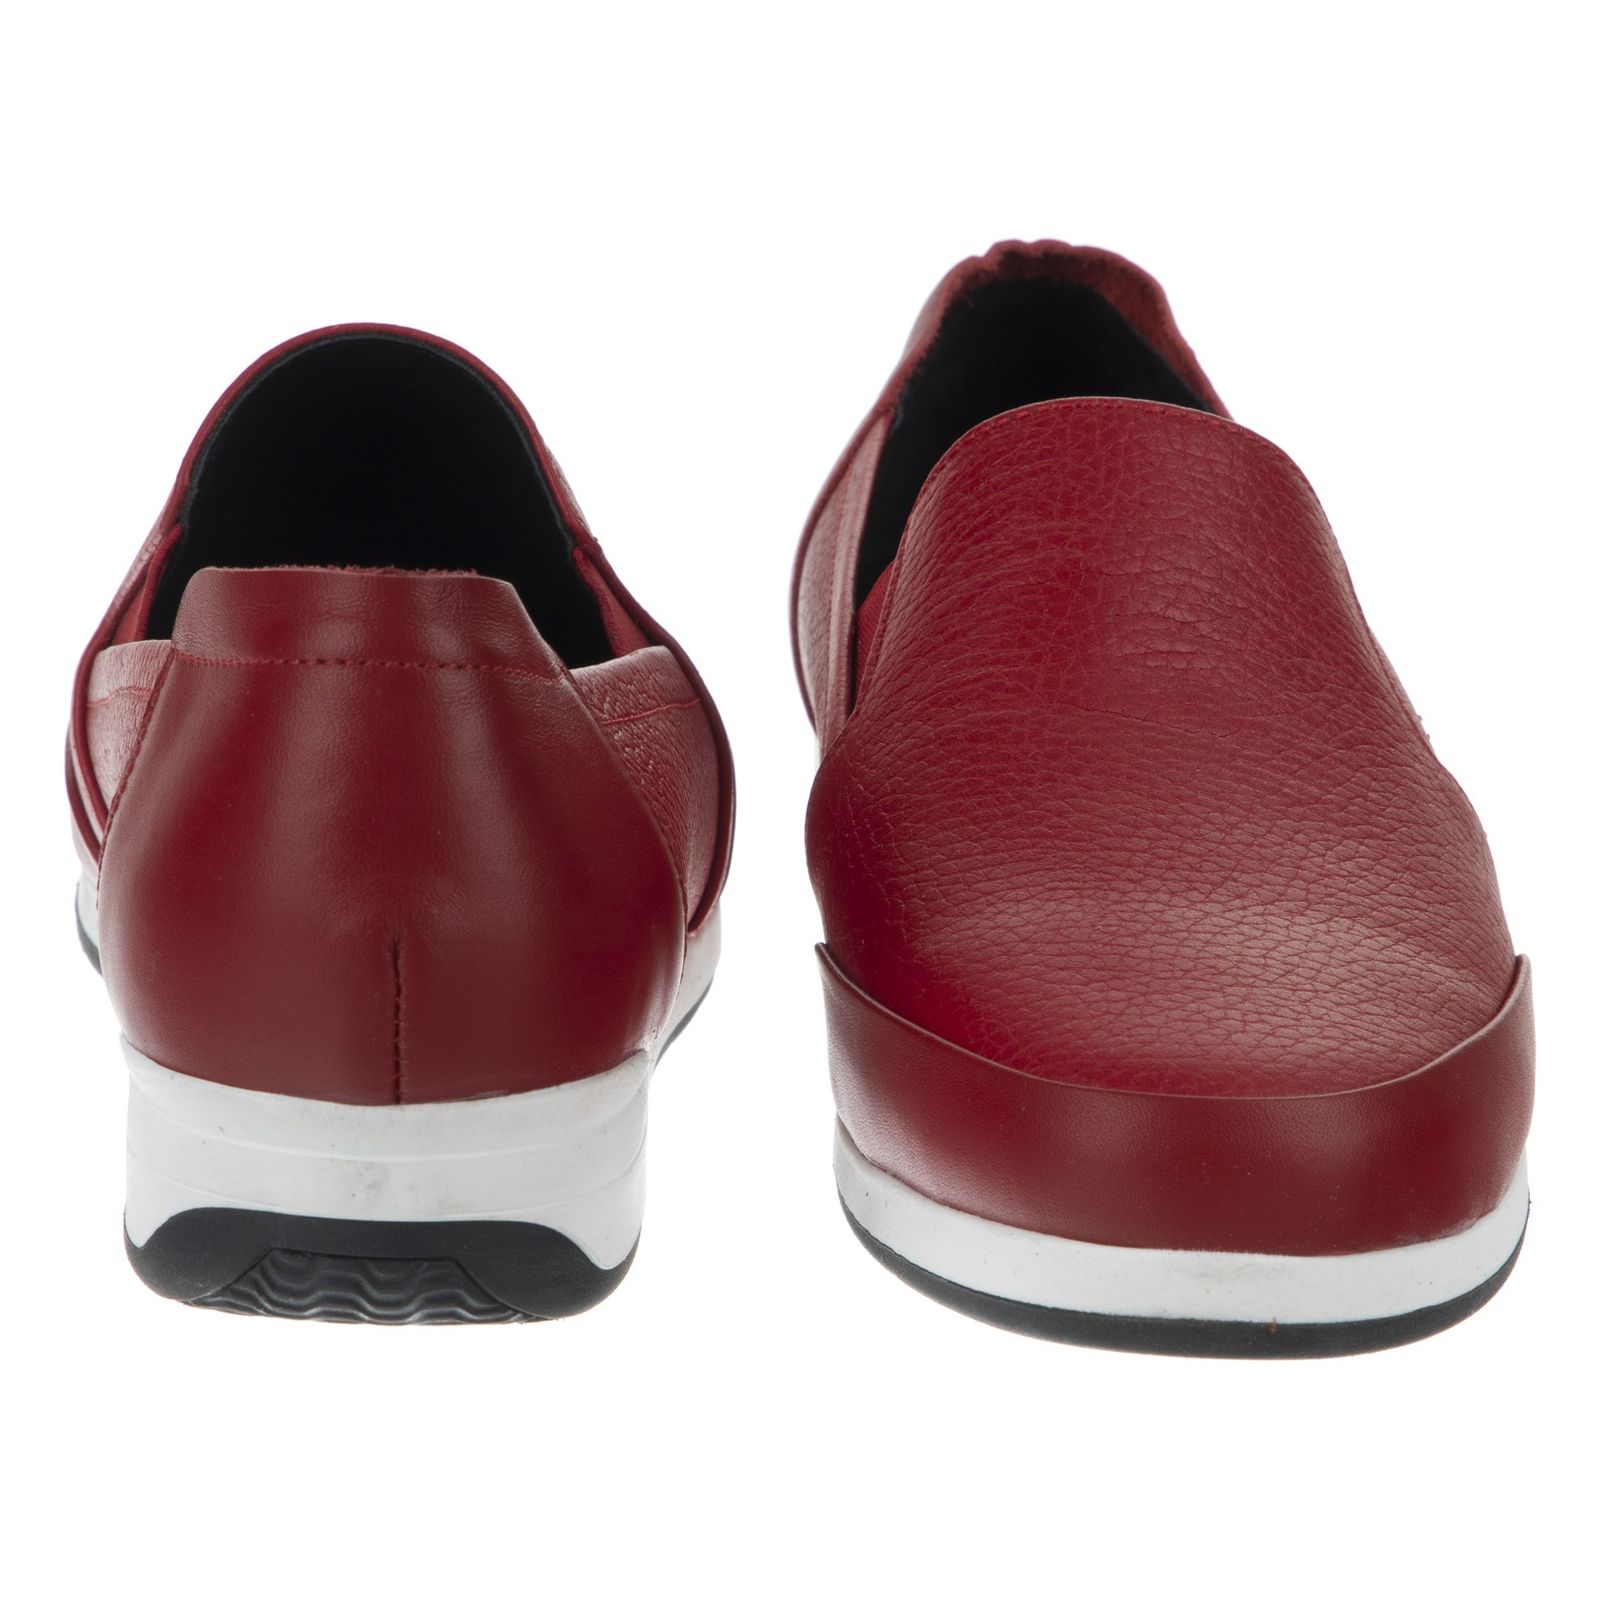 کفش روزمره زنانه شیفر مدل 5275A-102 - قرمز - 4